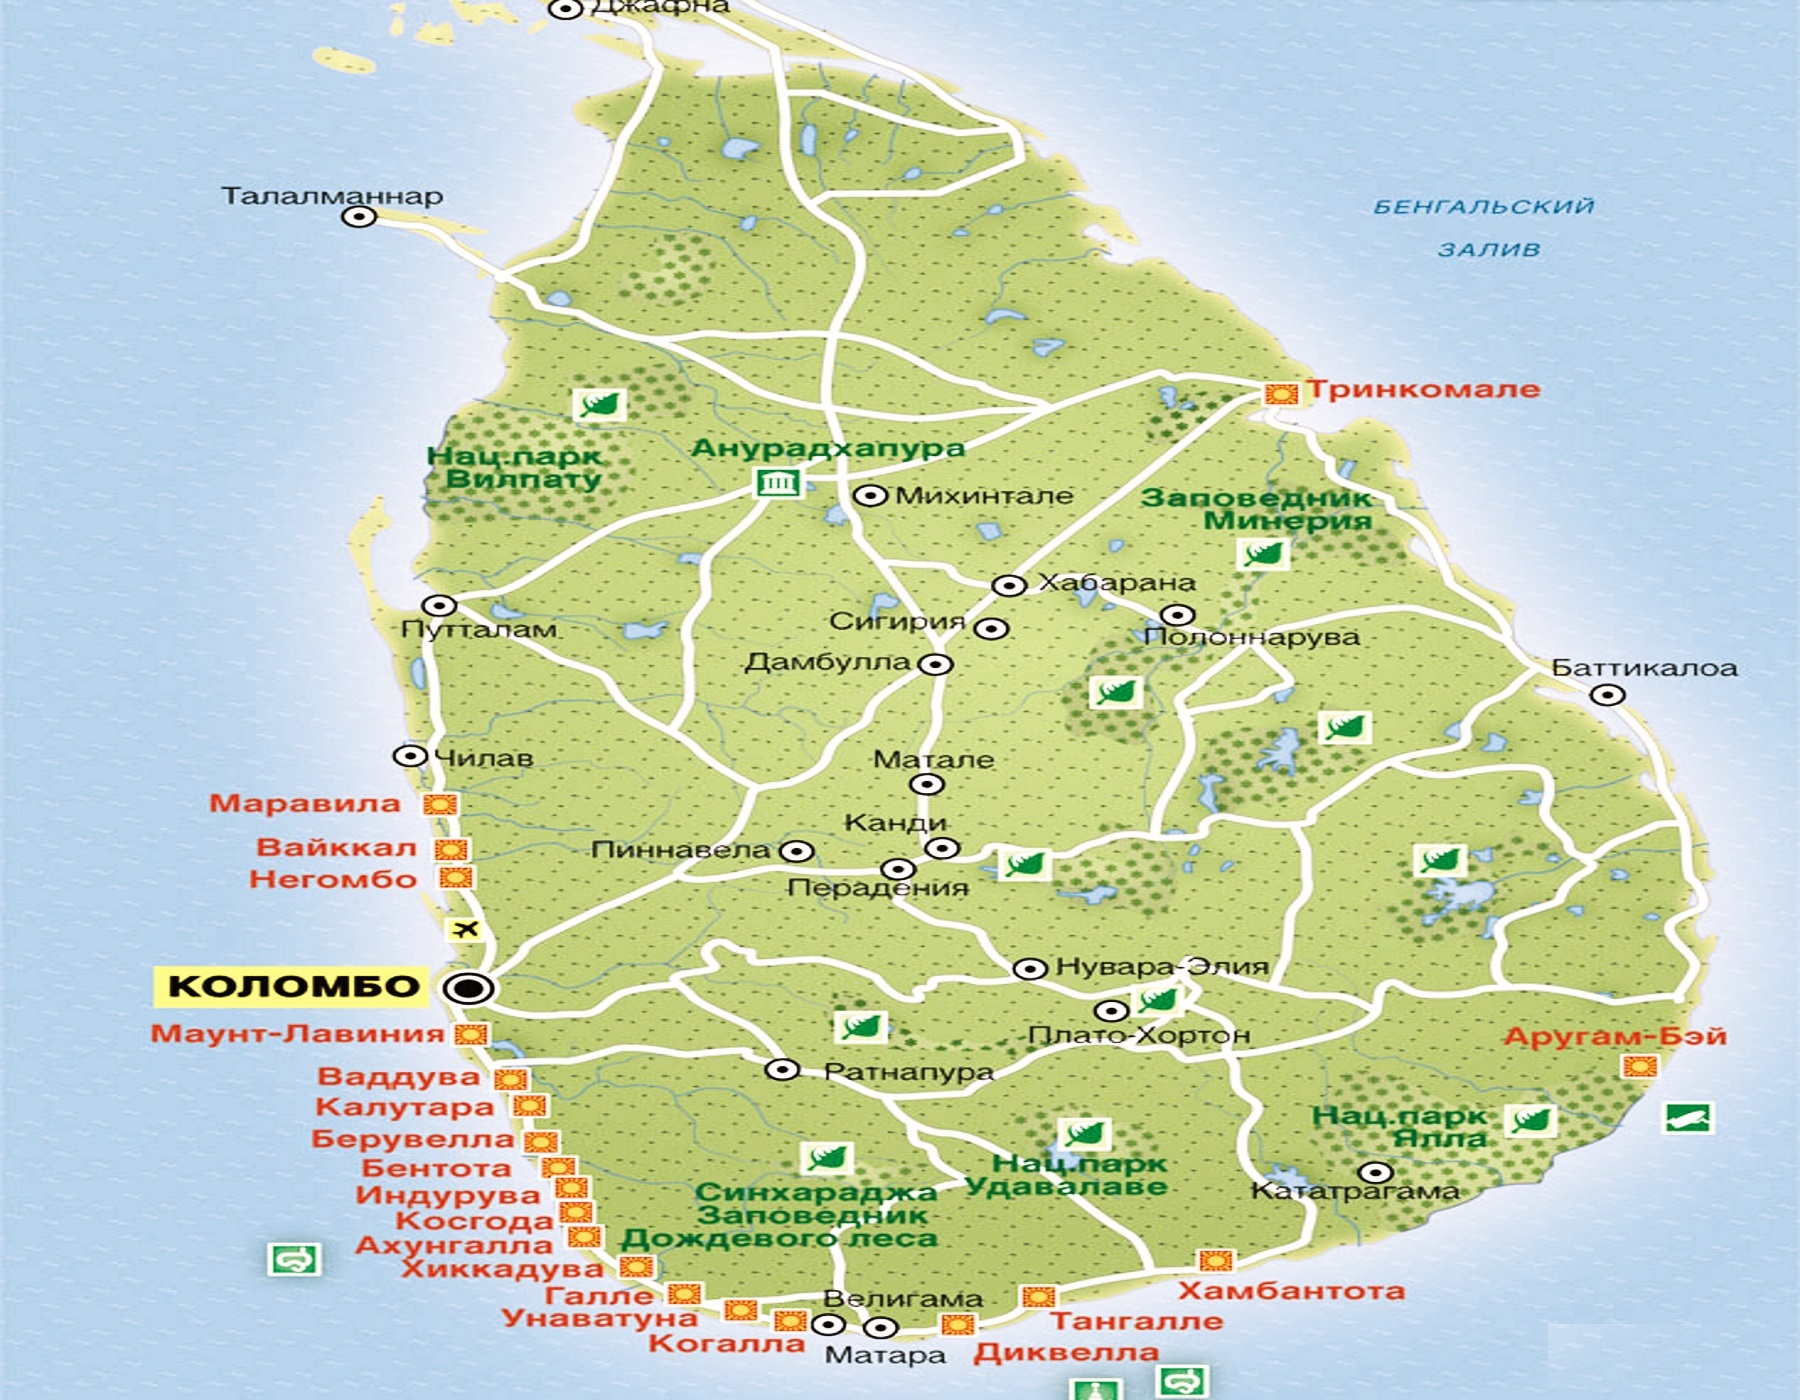 Шри ланка страна карта. Мирисса Шри Ланка на карте. Шри Ланка карта курортов. Карта курортов на Шри Ланке. Карта Шри Ланки с курортами на русском языке.